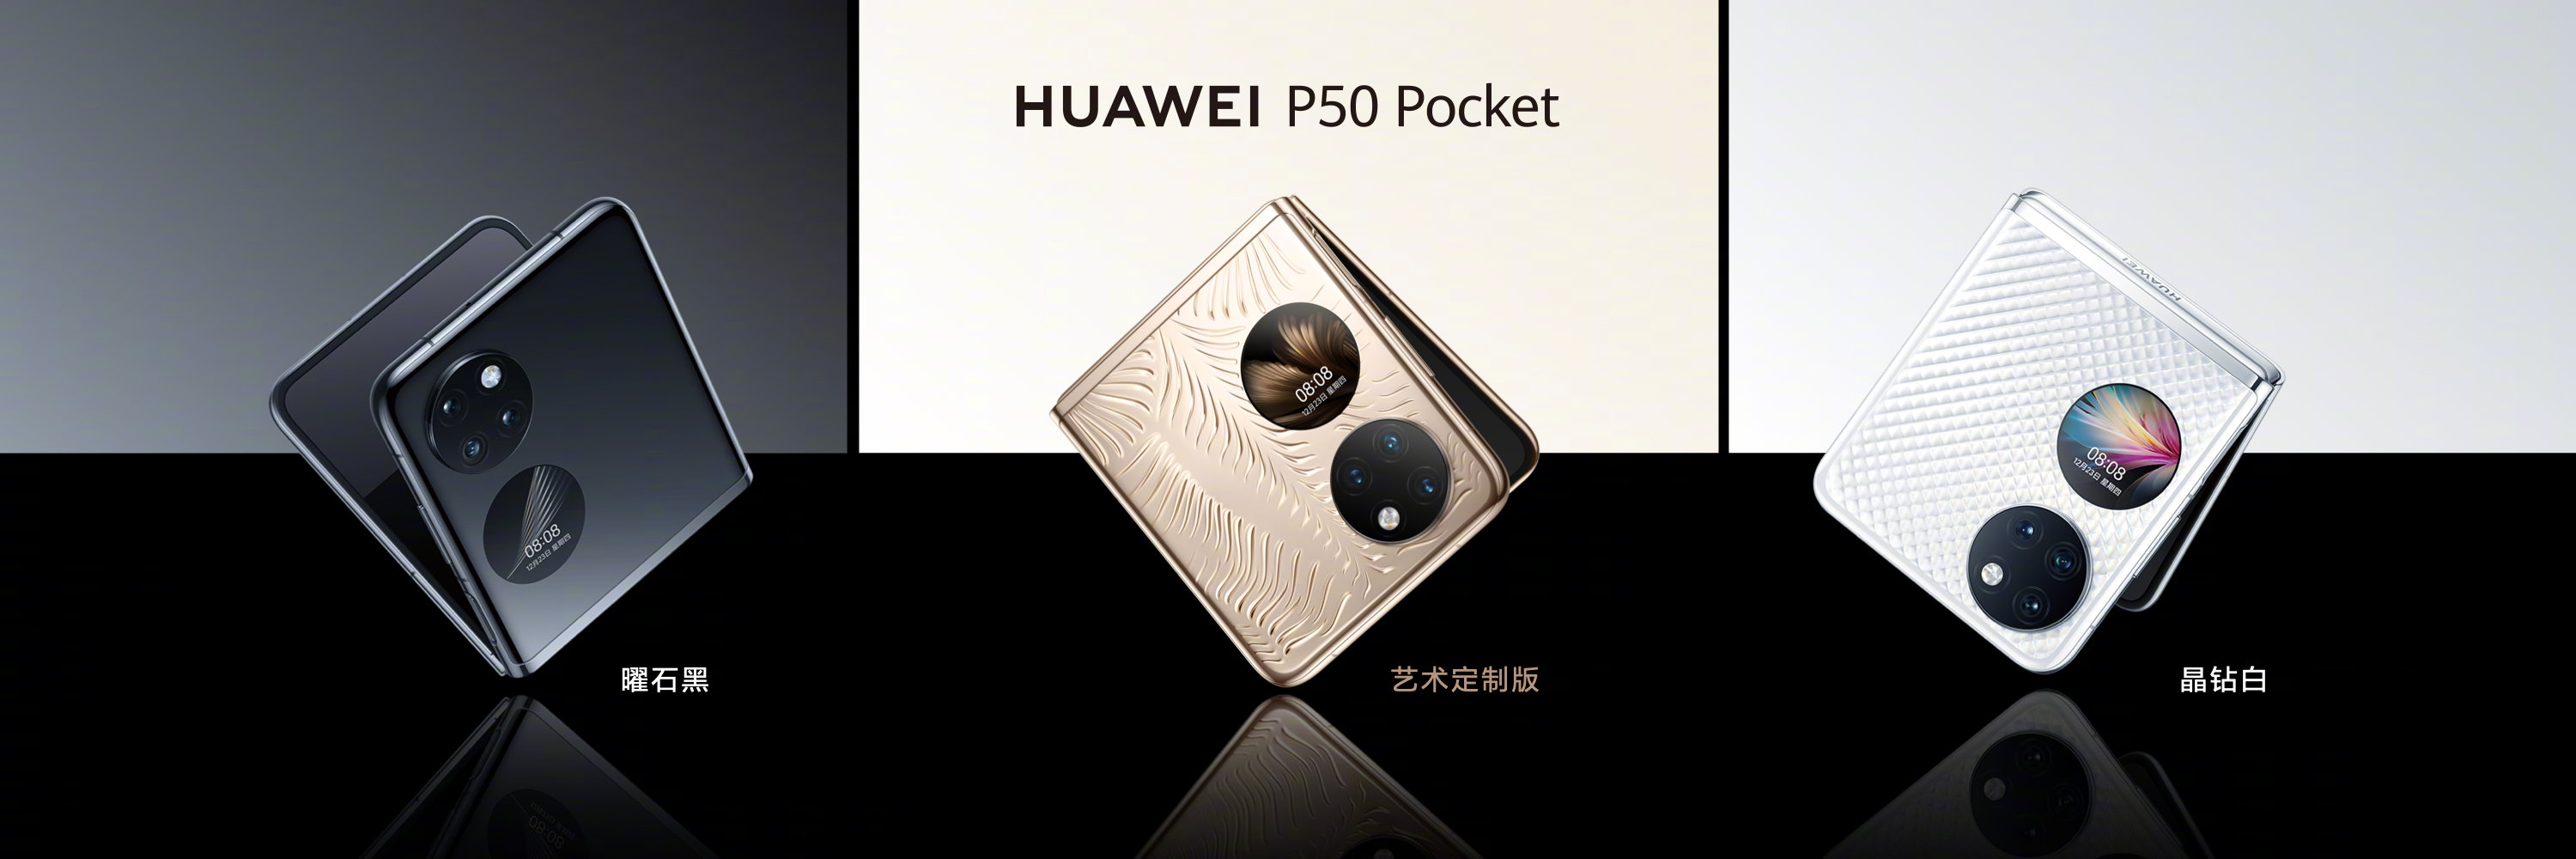 Huawei pocket